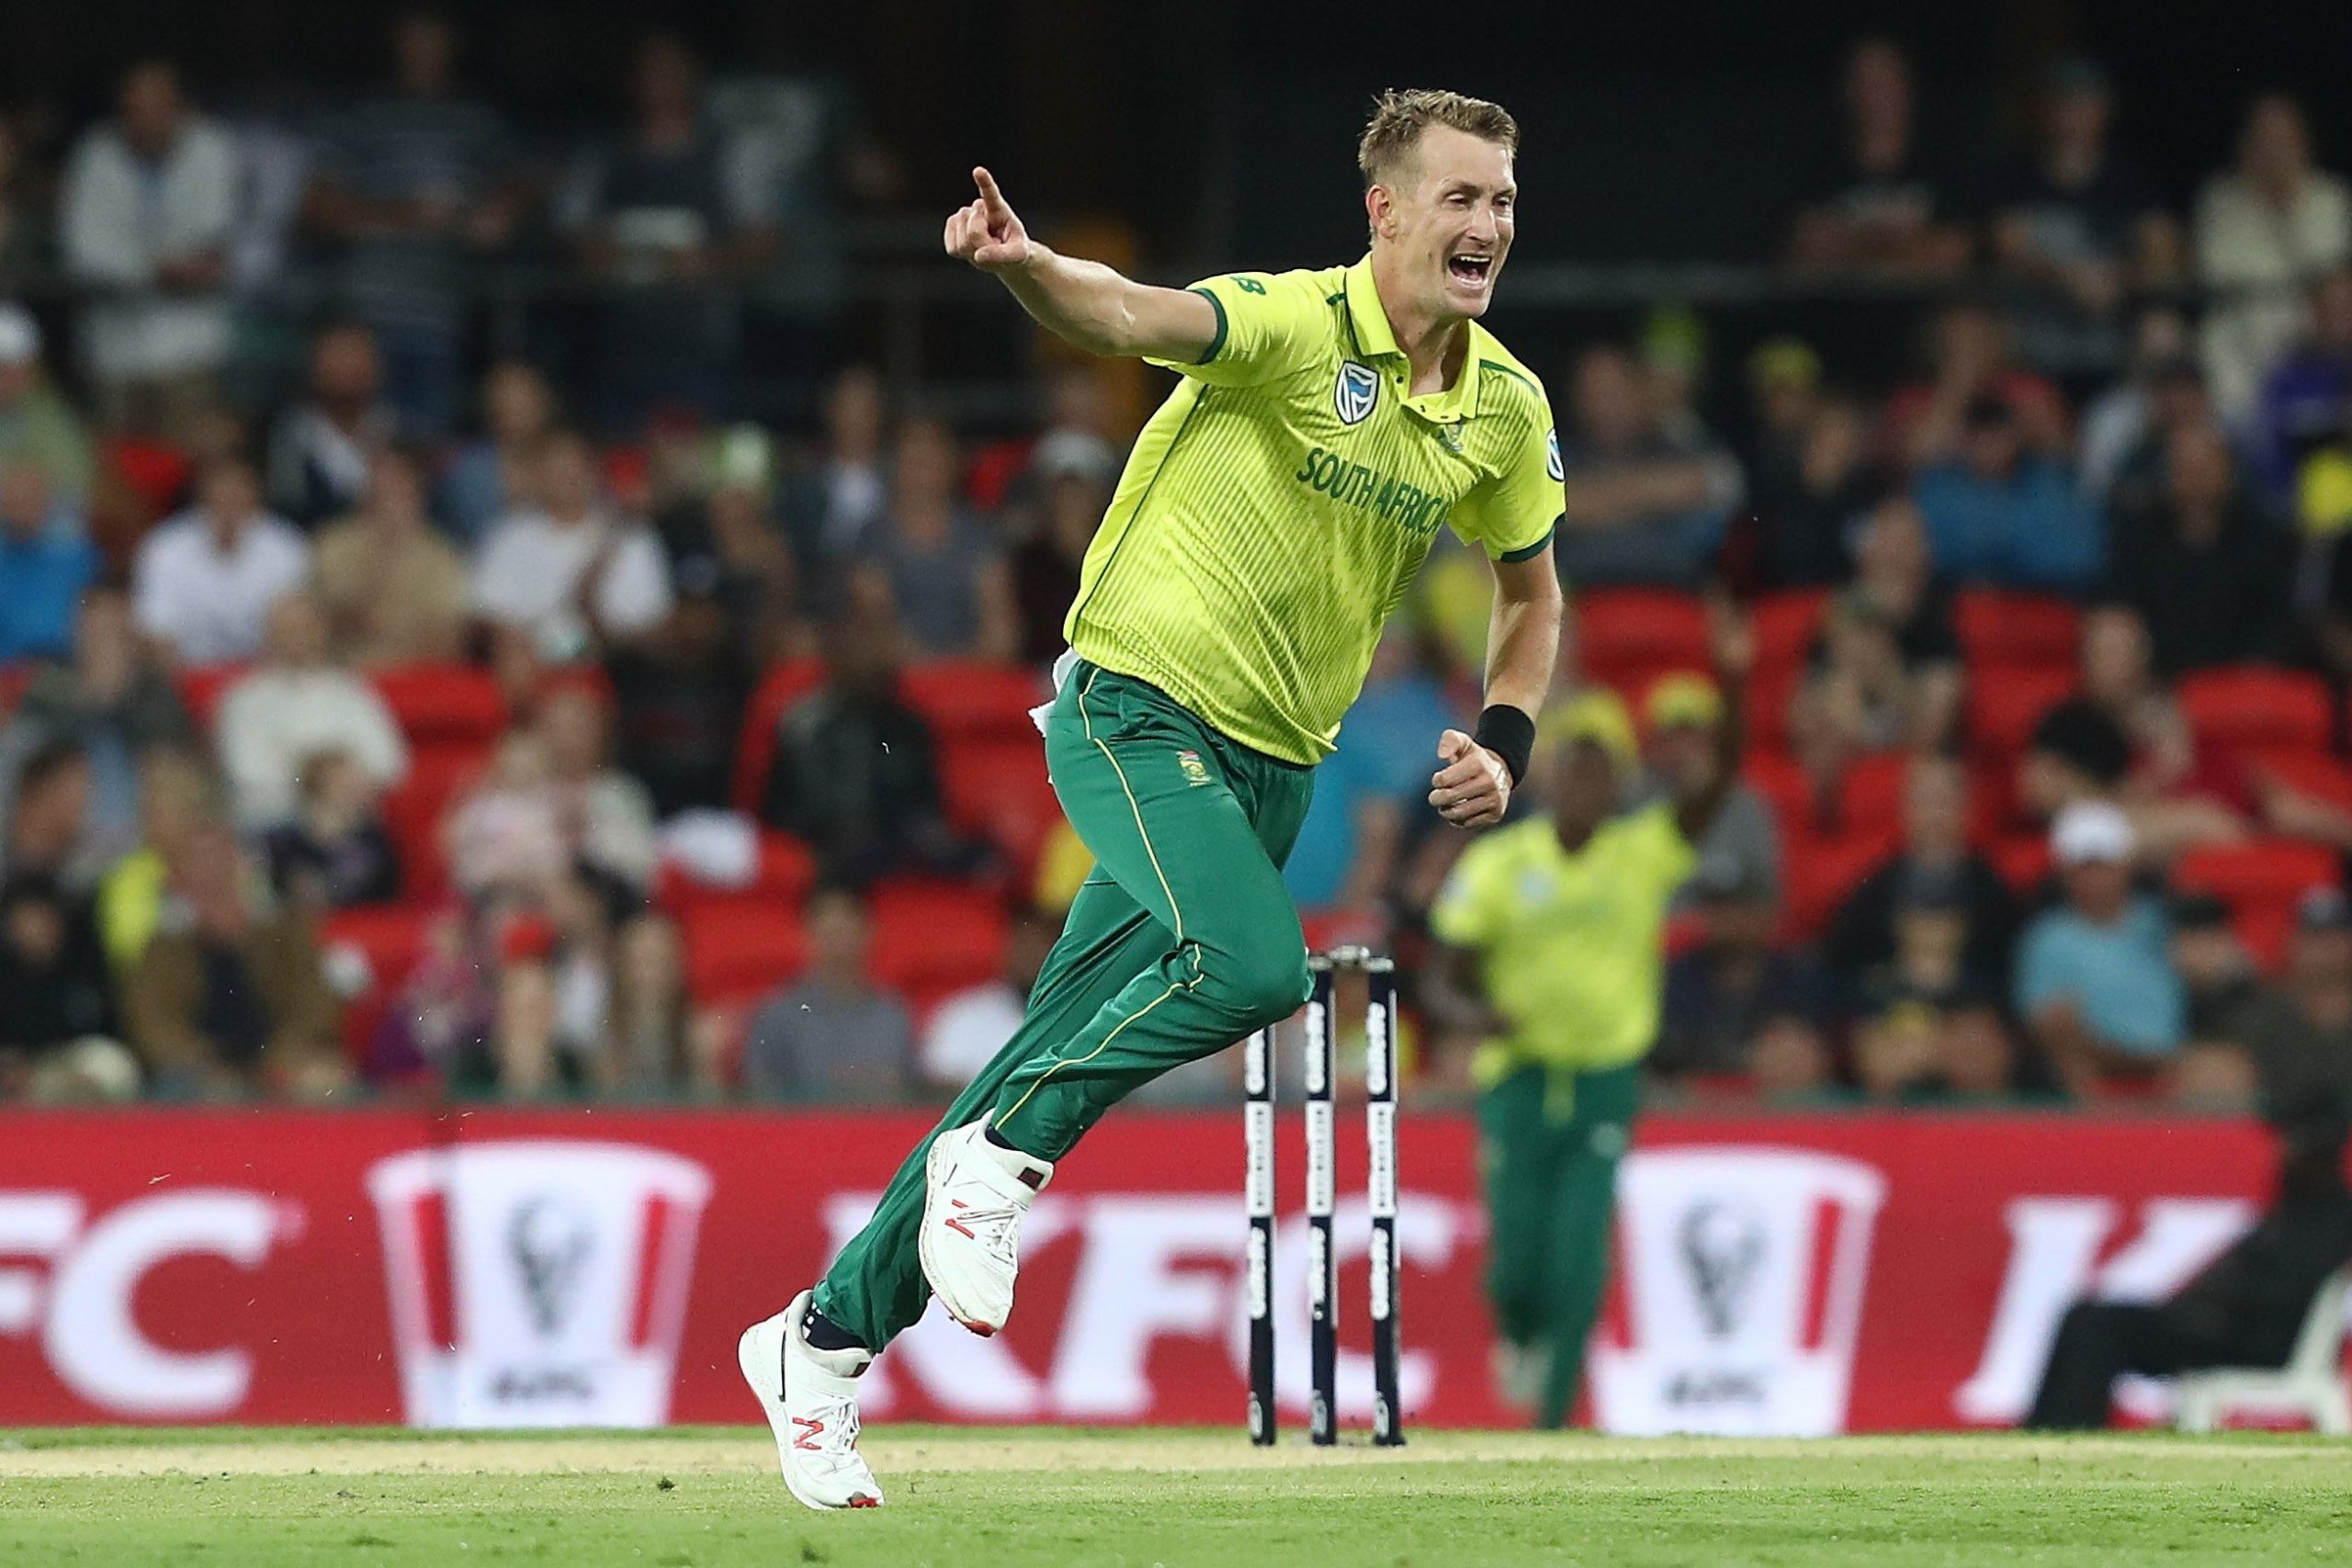 Kohli to De Villiers: Chris Morris lists toughest batsmen he has bowled to